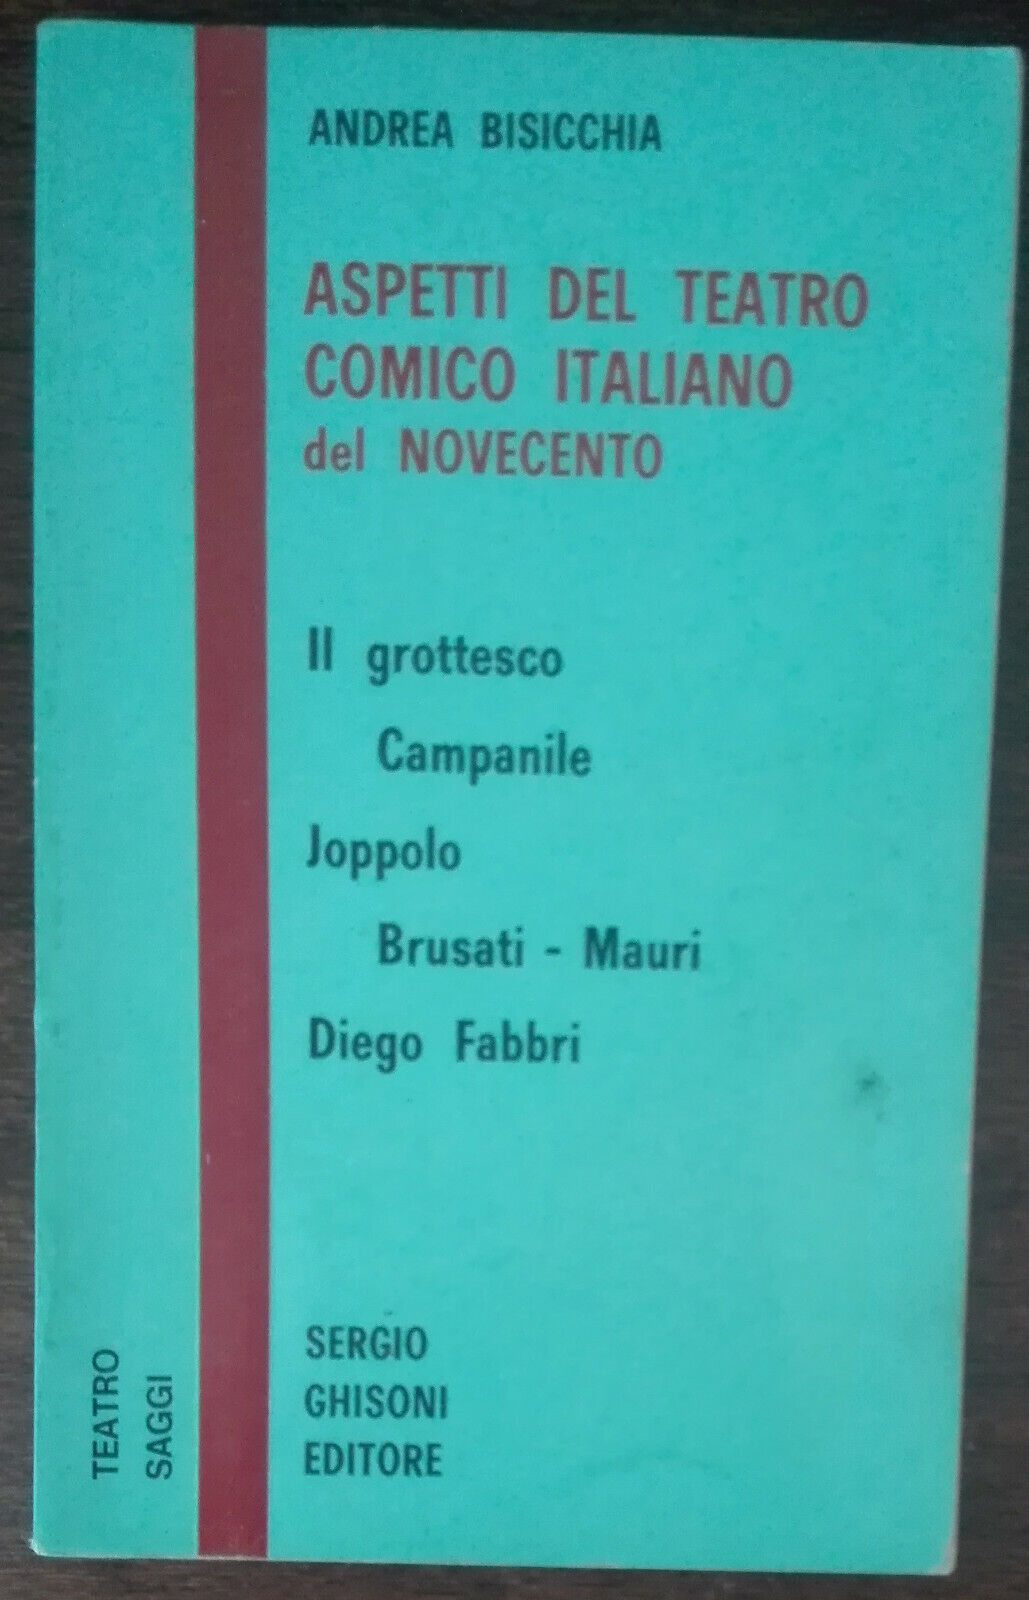 Aspetti del teatro comico italiano del novecento - Bisicchia - Ghisoni,1973 - A